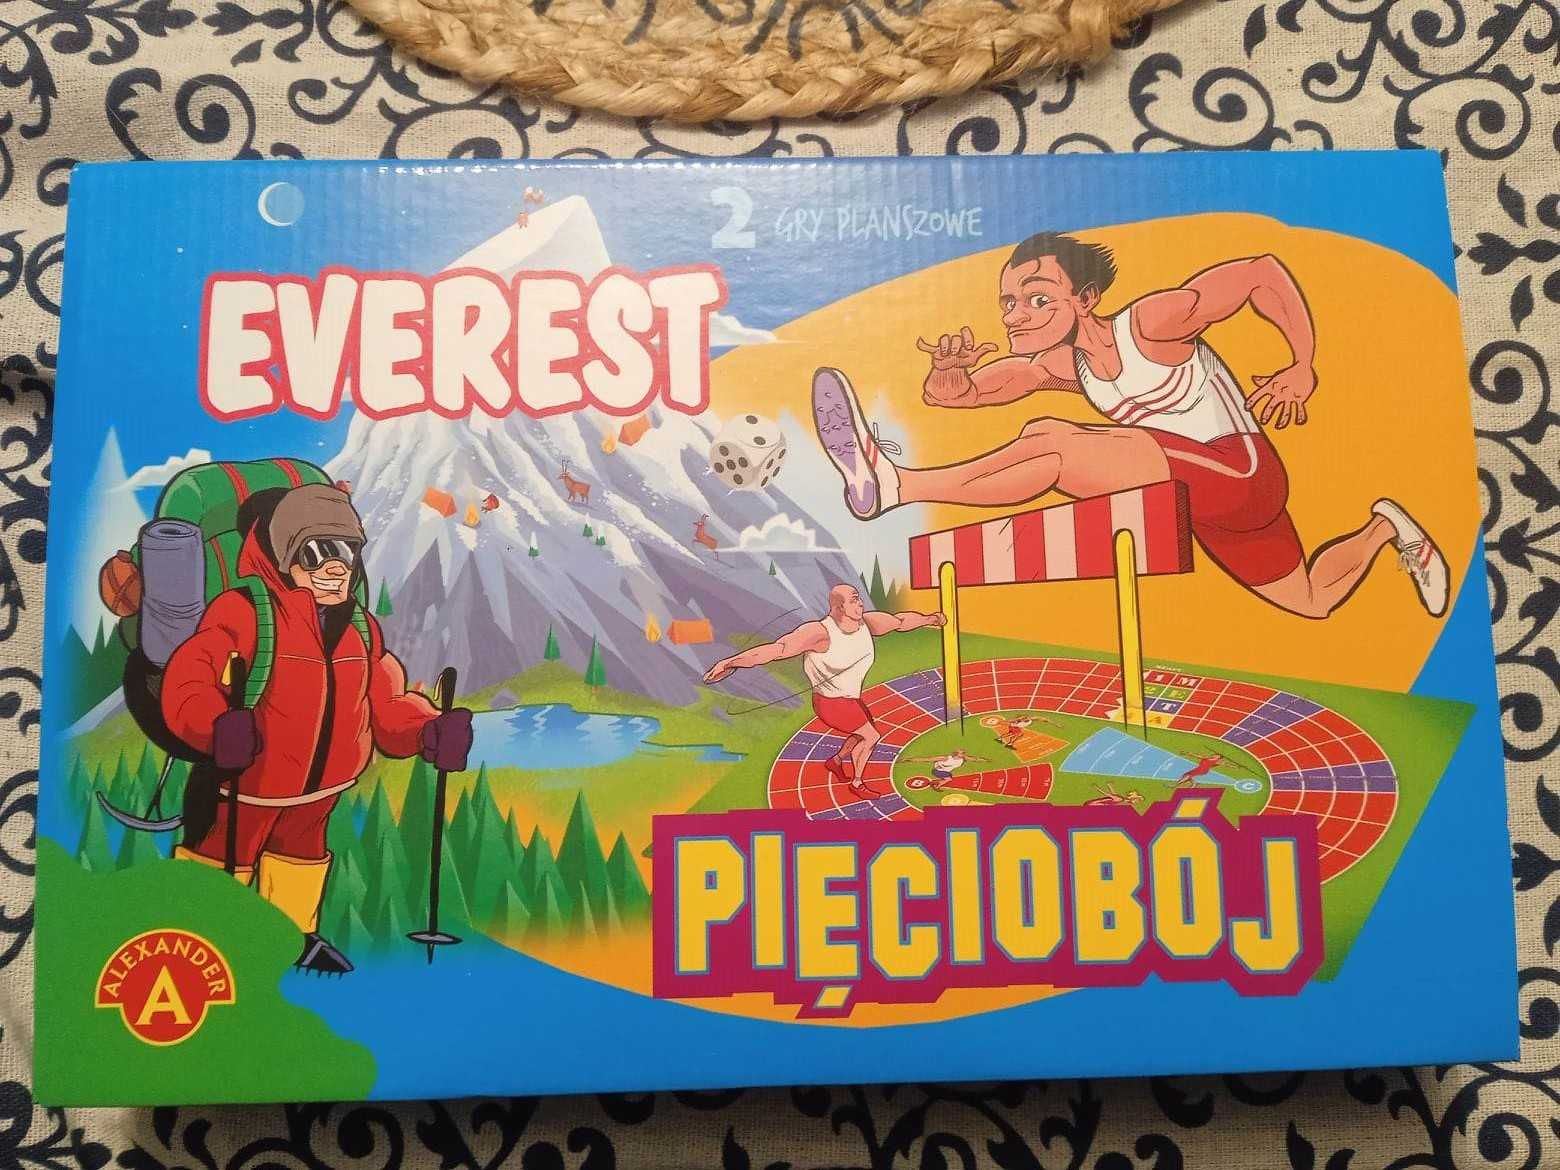 2 gry planszowe Everest i Pięciobój Alexander